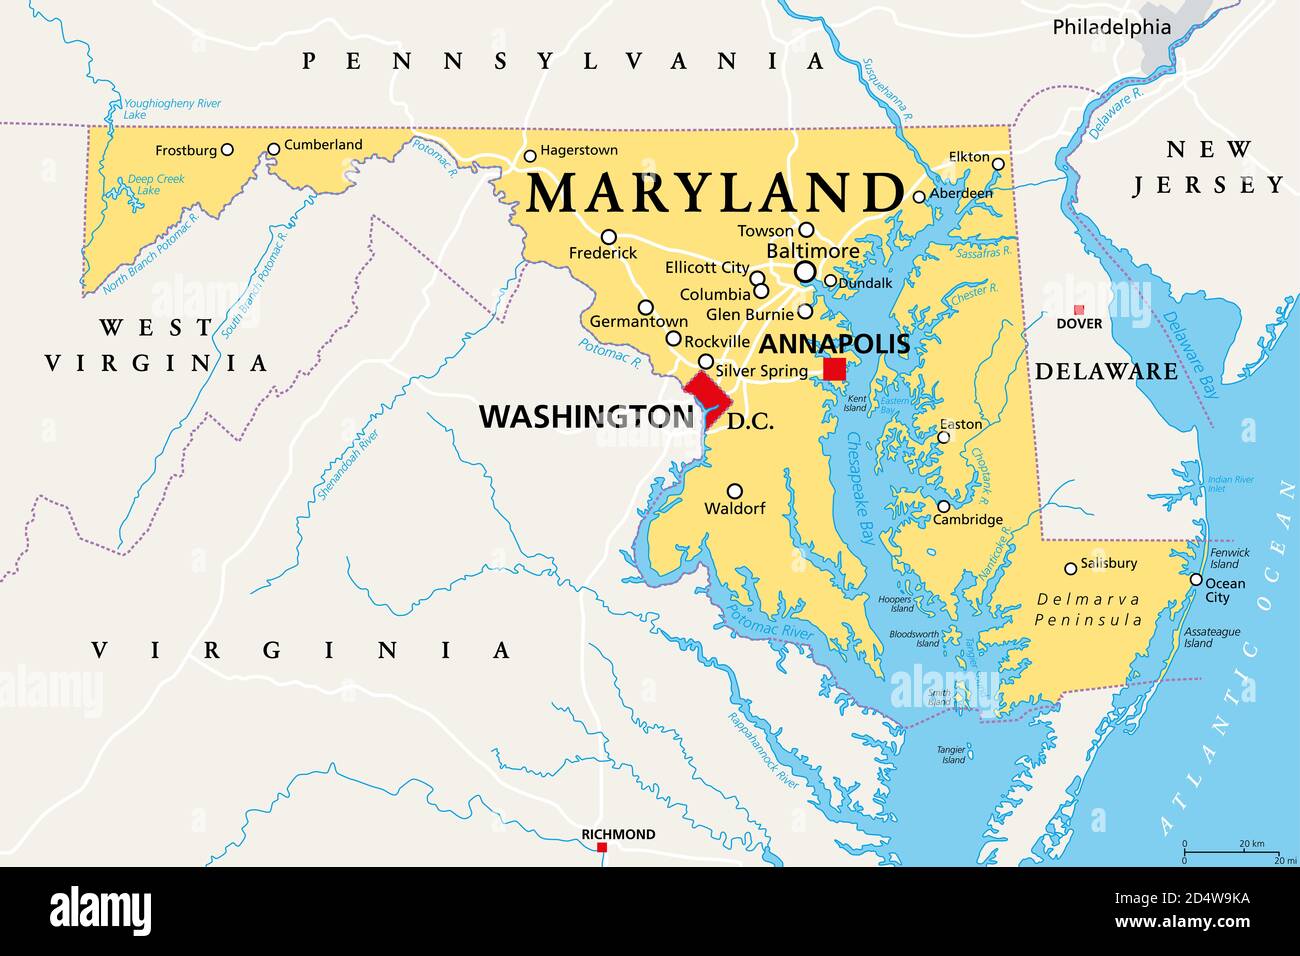 Maryland, MD, politische Karte. Staat in der Mid-Atlantic Region der Vereinigten Staaten von Amerika. Hauptstadt Annapolis. Alter Linienzustand. Freier Status. Stockfoto